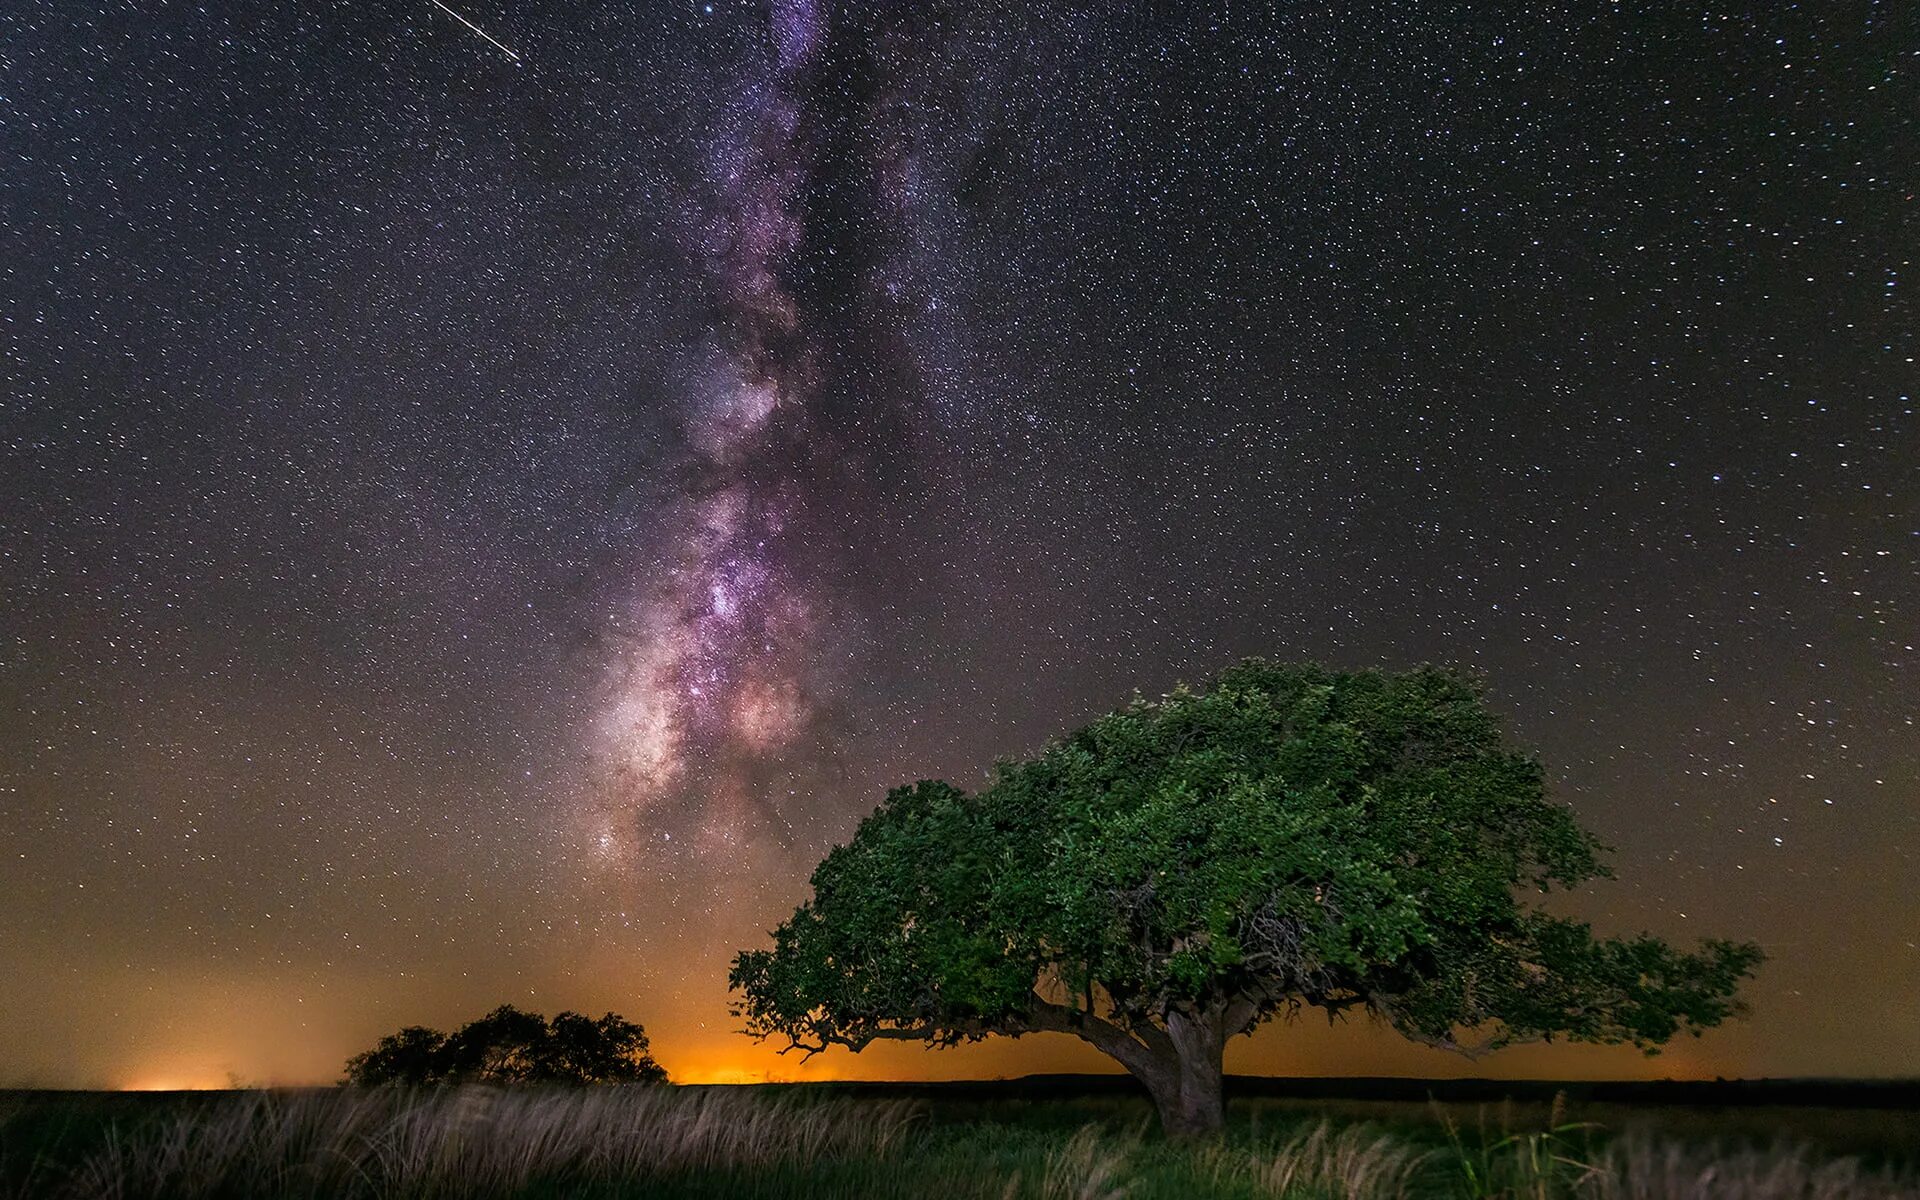 Космос Галактика Млечный путь. Звездное небо Млечный путь Галактика. Ночное звездное небо Млечный путь. Красивое ночное небо. Tree star